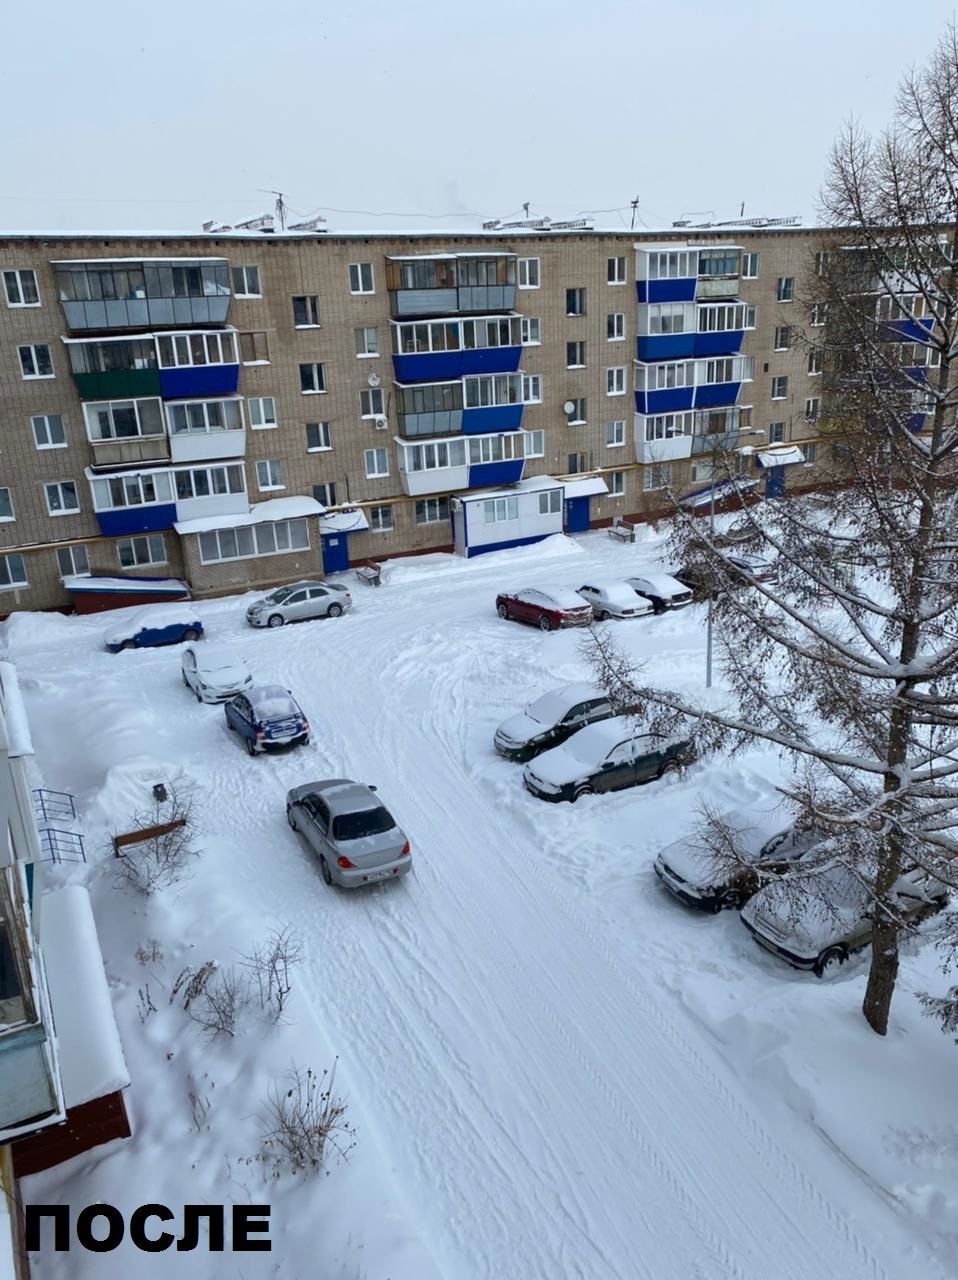 Житель Лениногорска через социальные сети обратился с жалобой по вопросу уборки снега